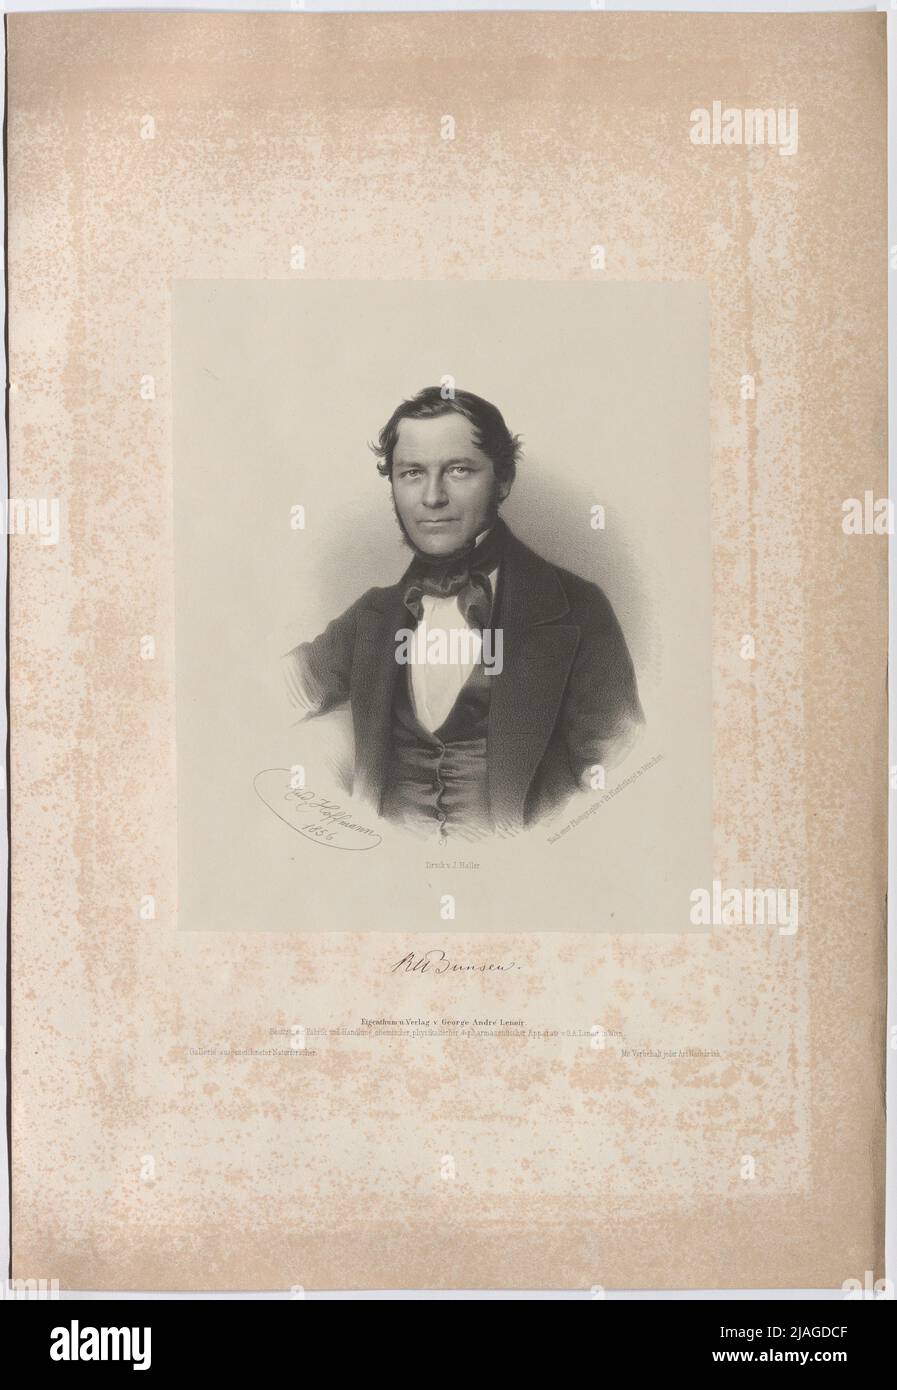 Robert Bunsen. Rudolf Hoffmann, lithographer, after: Franz Seraph Hanfstaengl (Hanfstängl) (1804—1877), Photographer, Joh. Haller, Printer, George André Lenoir (1825—1909), publisher Stock Photo